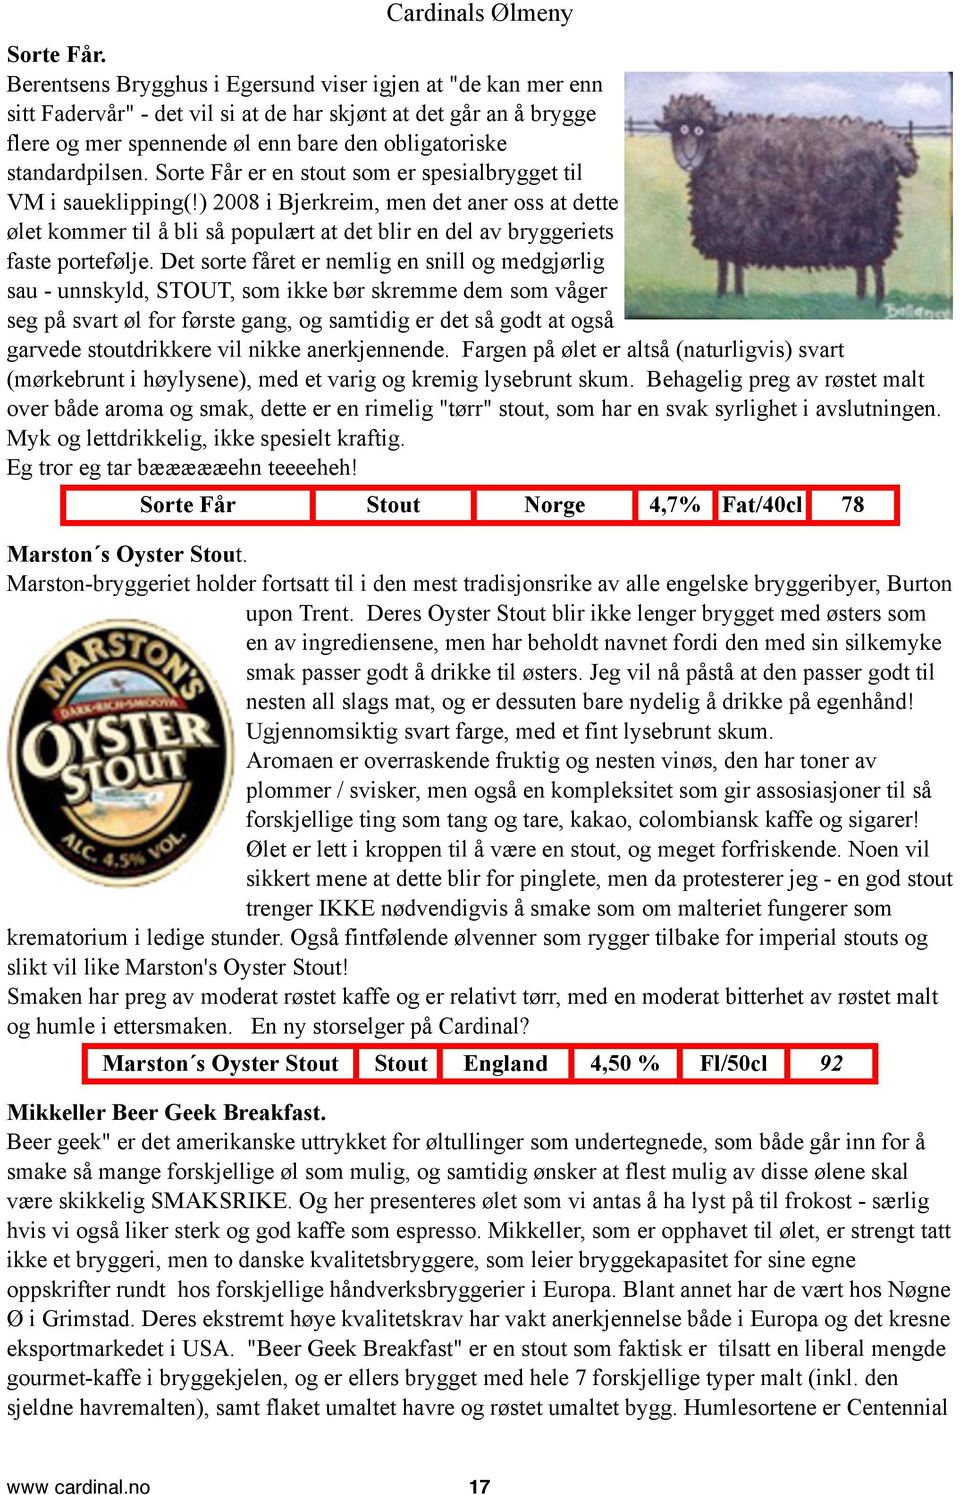 Sorte Får er en stout som er spesialbrygget til VM i saueklipping(!) 2008 i Bjerkreim, men det aner oss at dette ølet kommer til å bli så populært at det blir en del av bryggeriets faste portefølje.